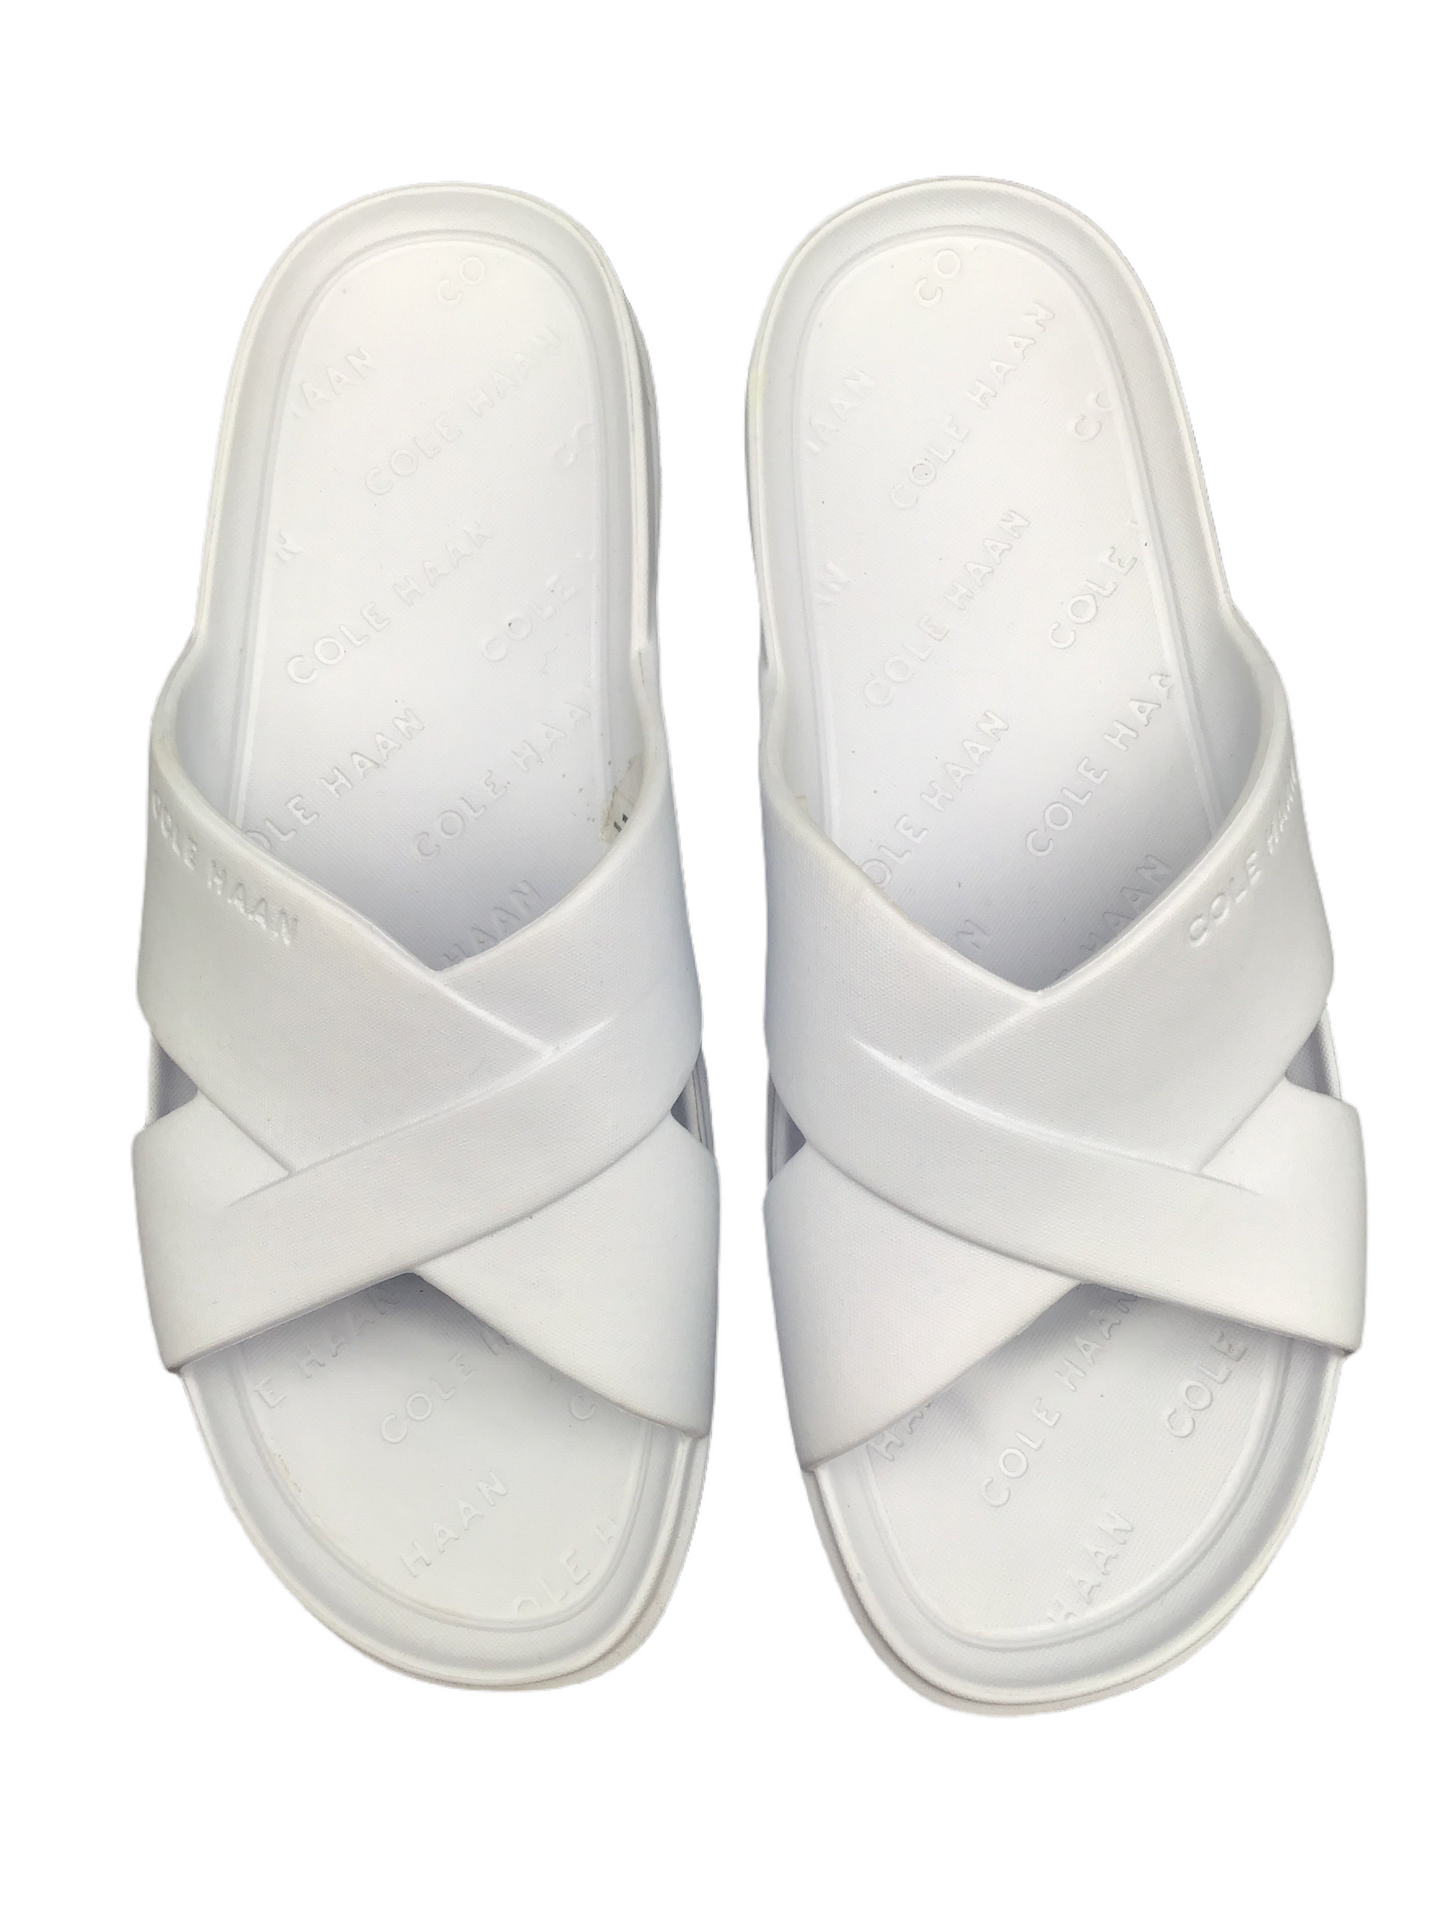 White Sandals Designer Cole-haan, Size 10